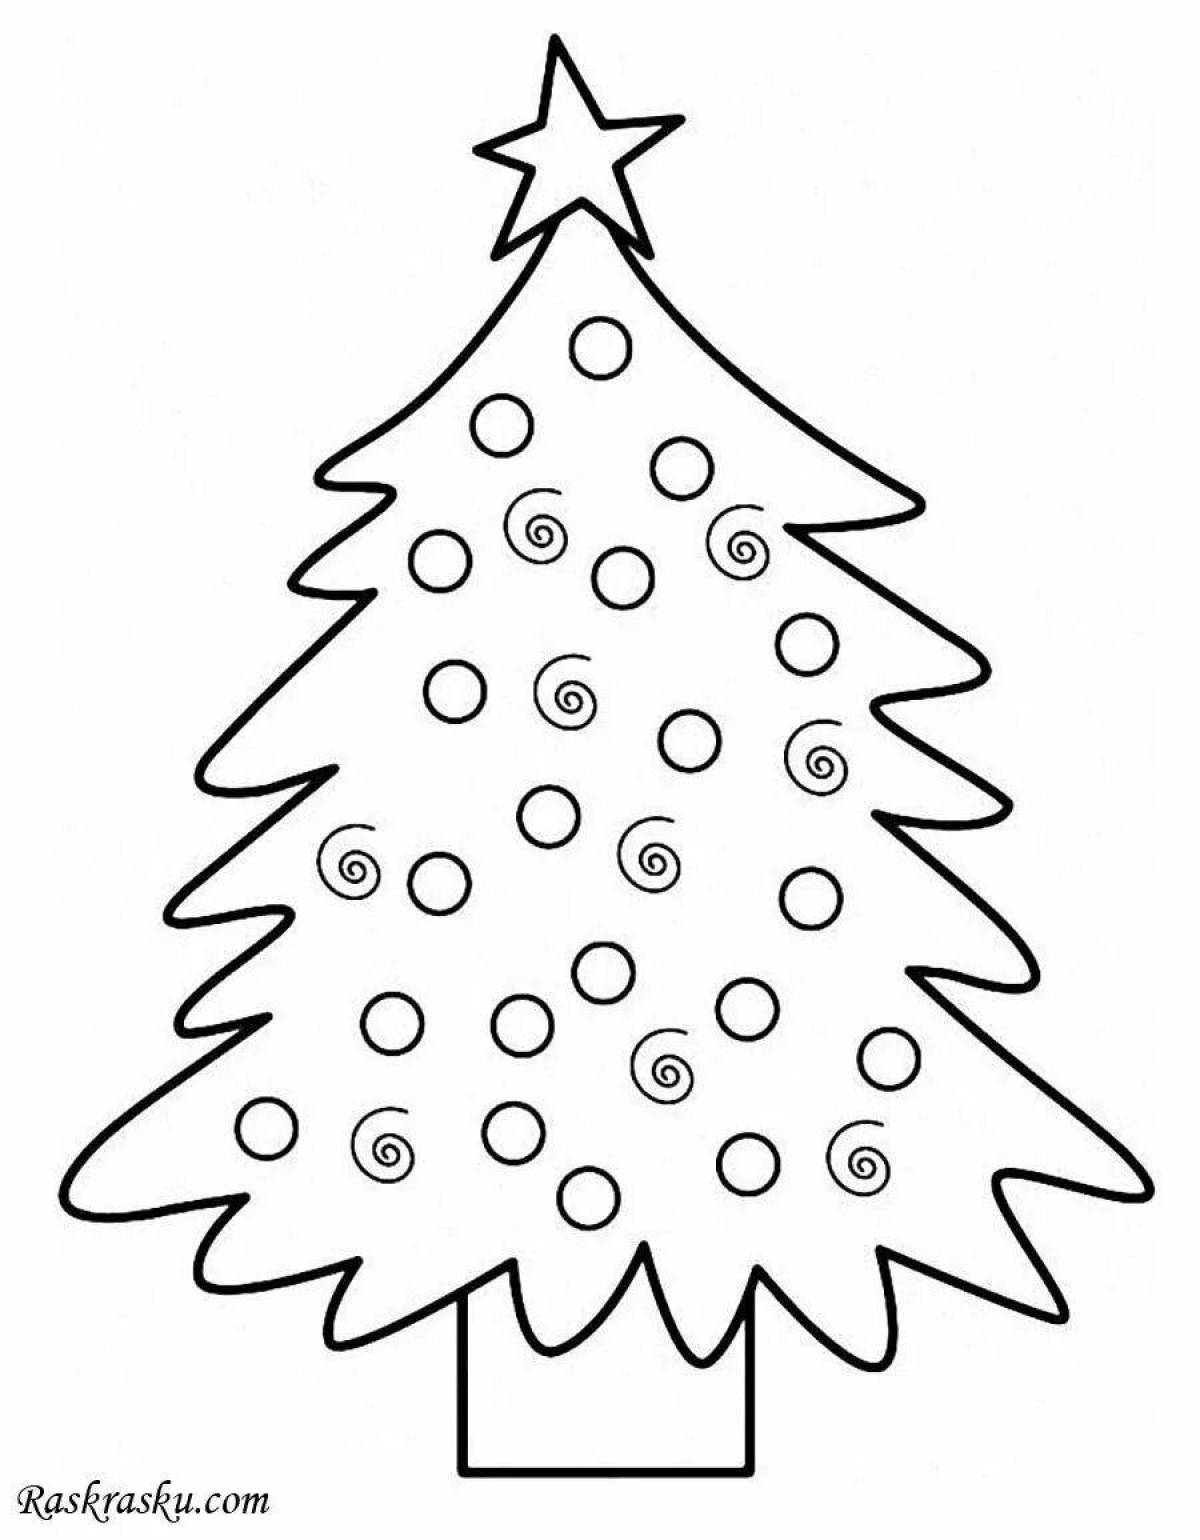 Ослепительная раскраска «рождественская елка» для детей